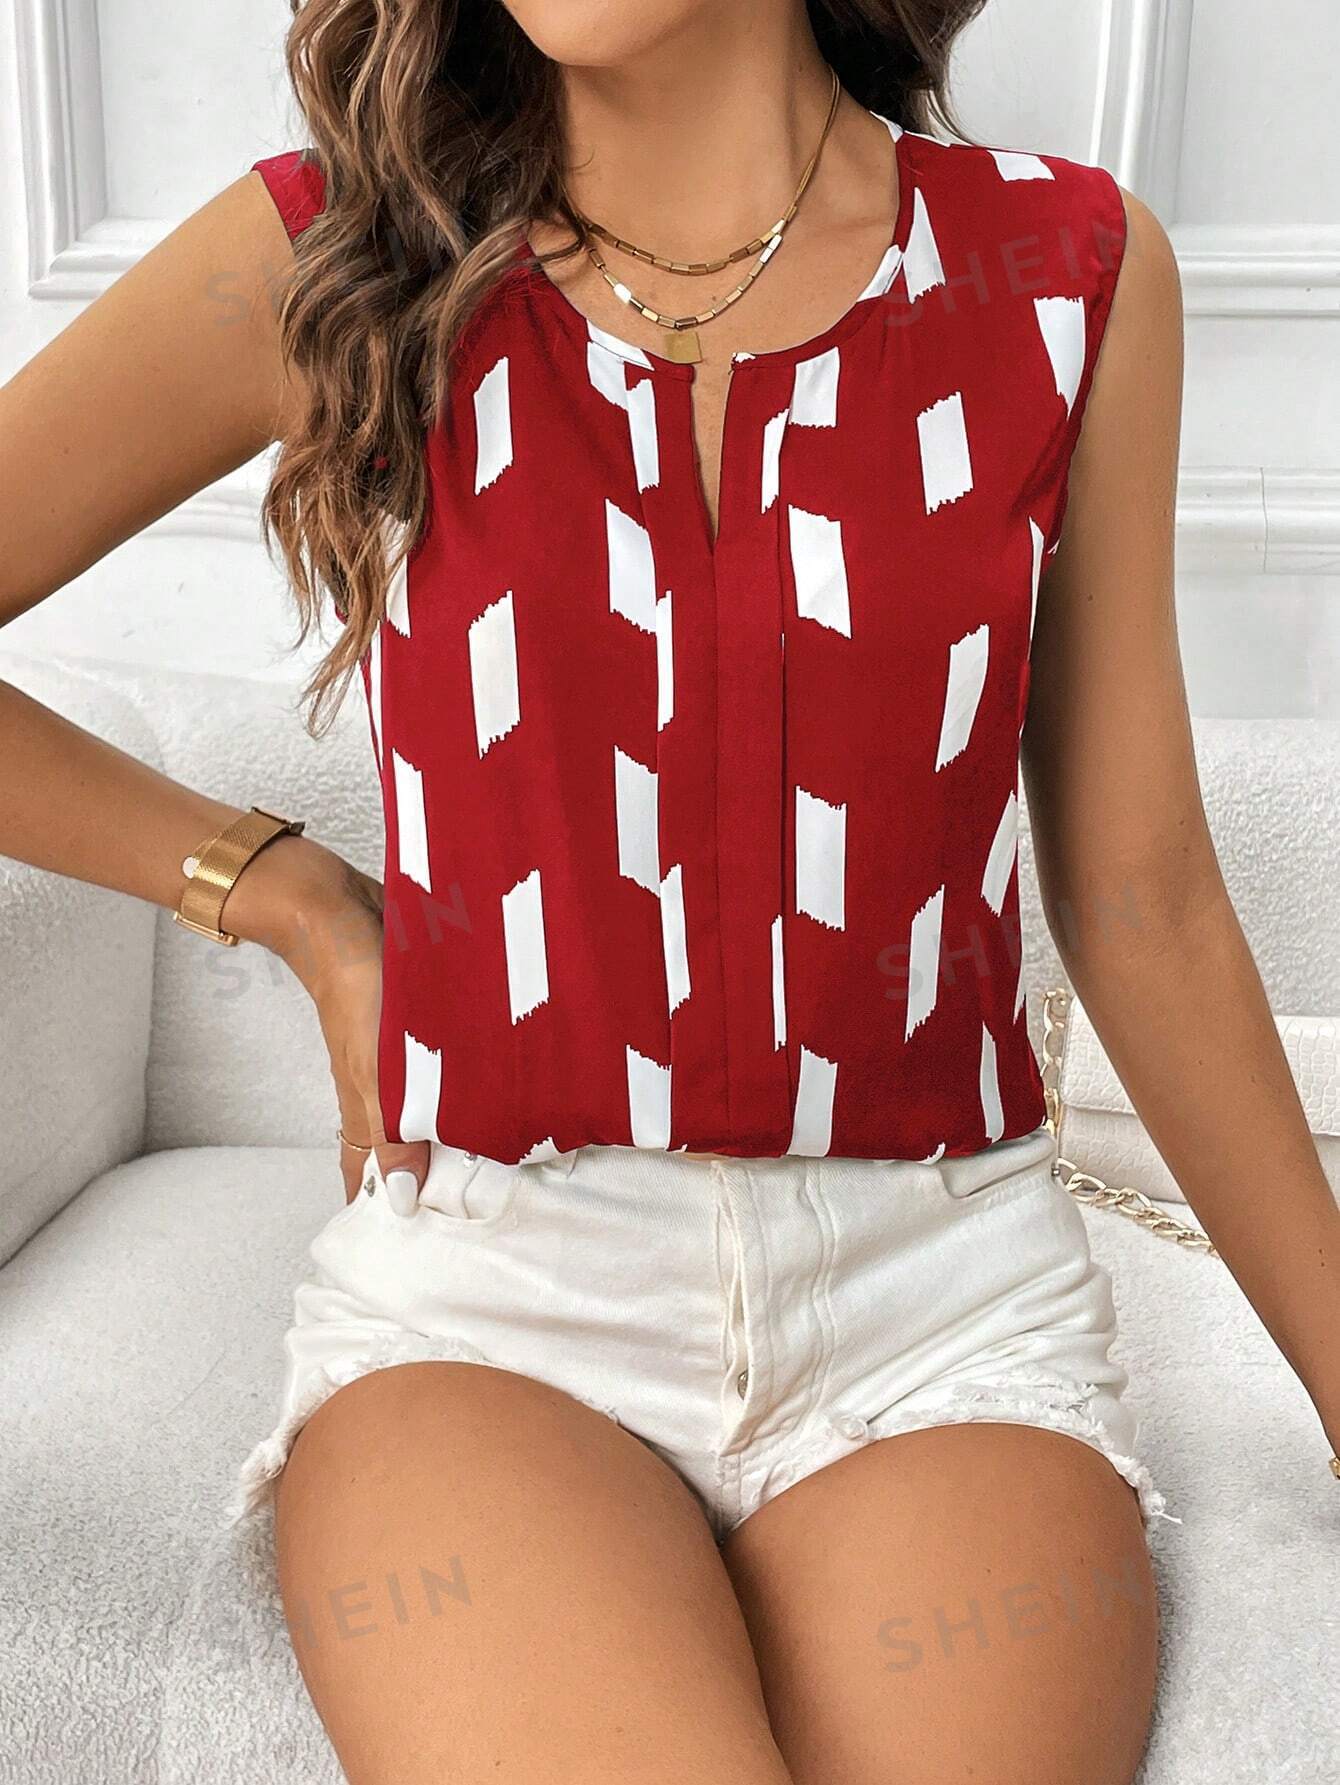 SHEIN Clasi Женская рубашка/блузка без рукавов с геометрическим принтом, красный и белый shein clasi женская рубашка блузка без рукавов с геометрическим принтом хаки